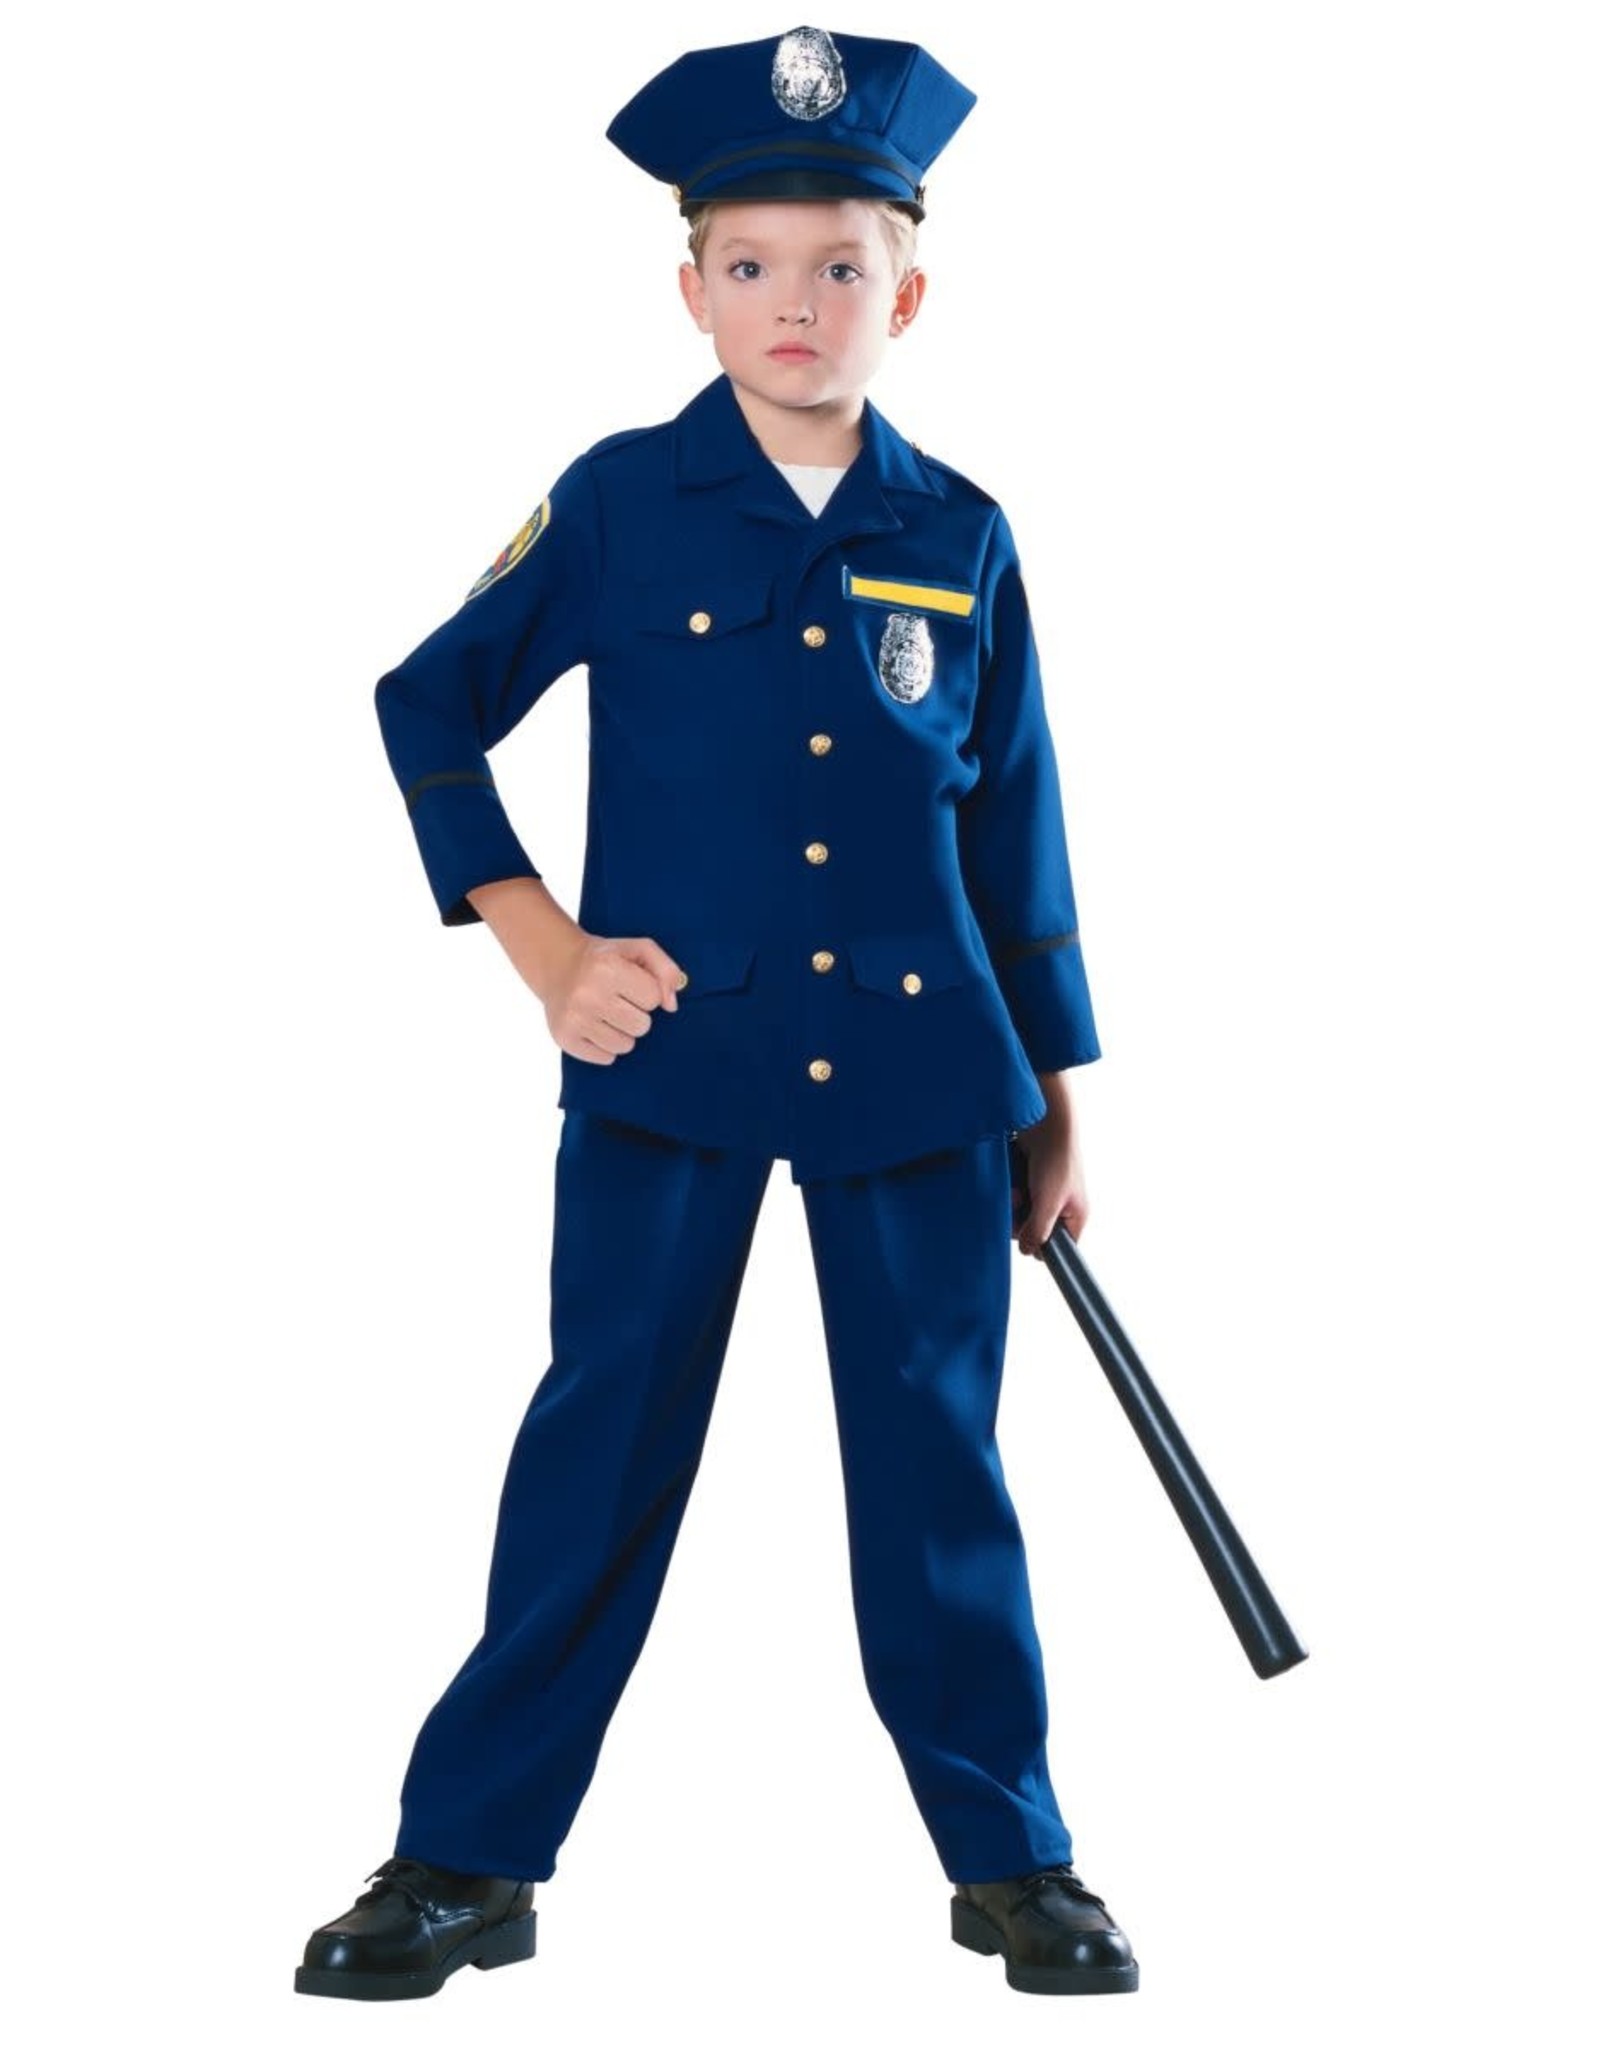 Children's Police Officer - Karries Kostumes & Dance Supplies